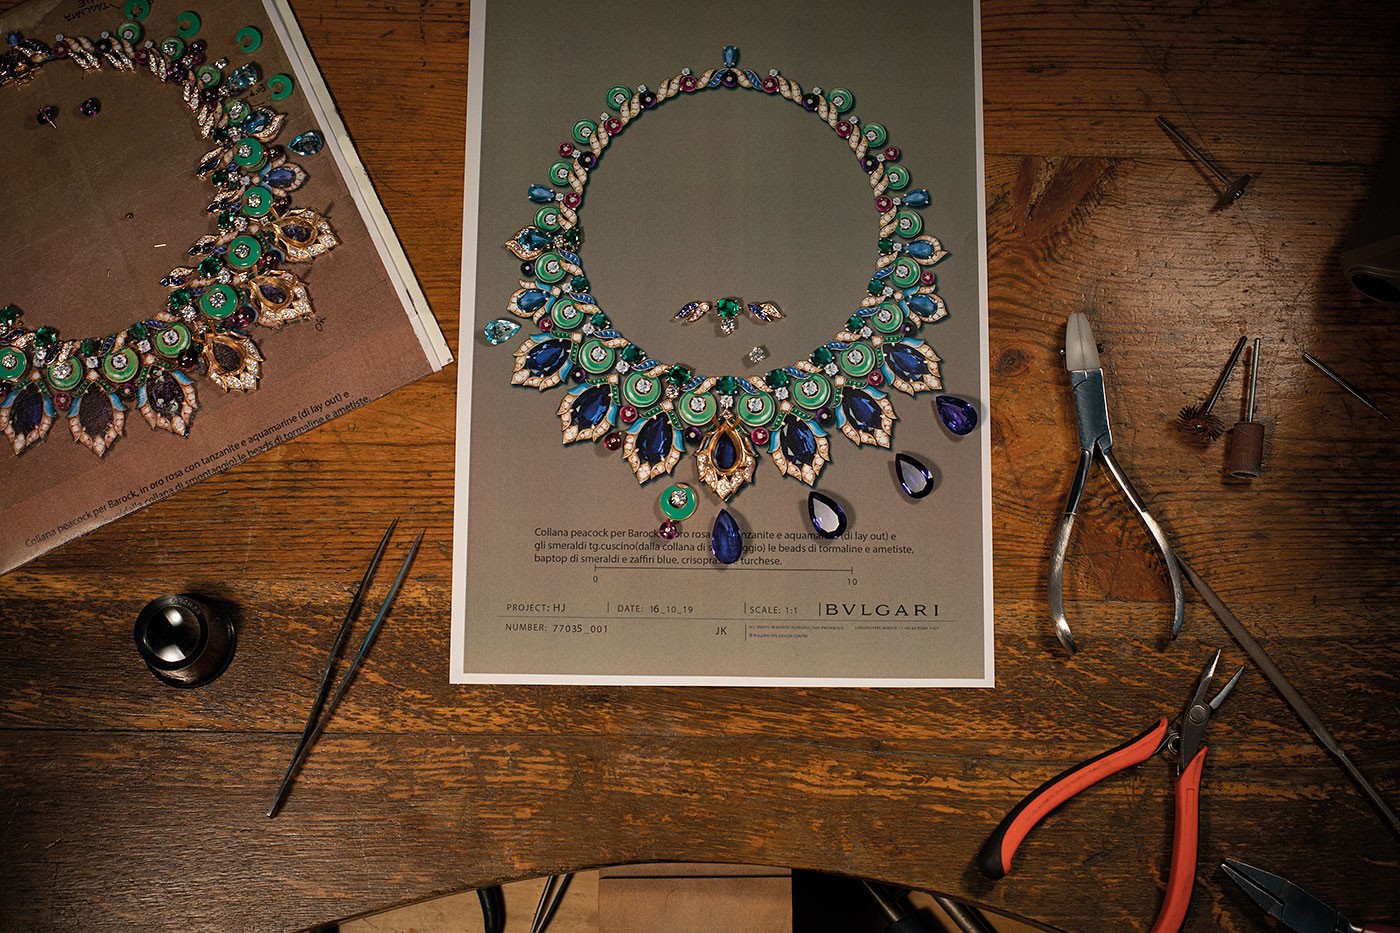 Processo de produção do colar Peacock, da coleção Barocko da Bulgari (Foto: Divulgação)